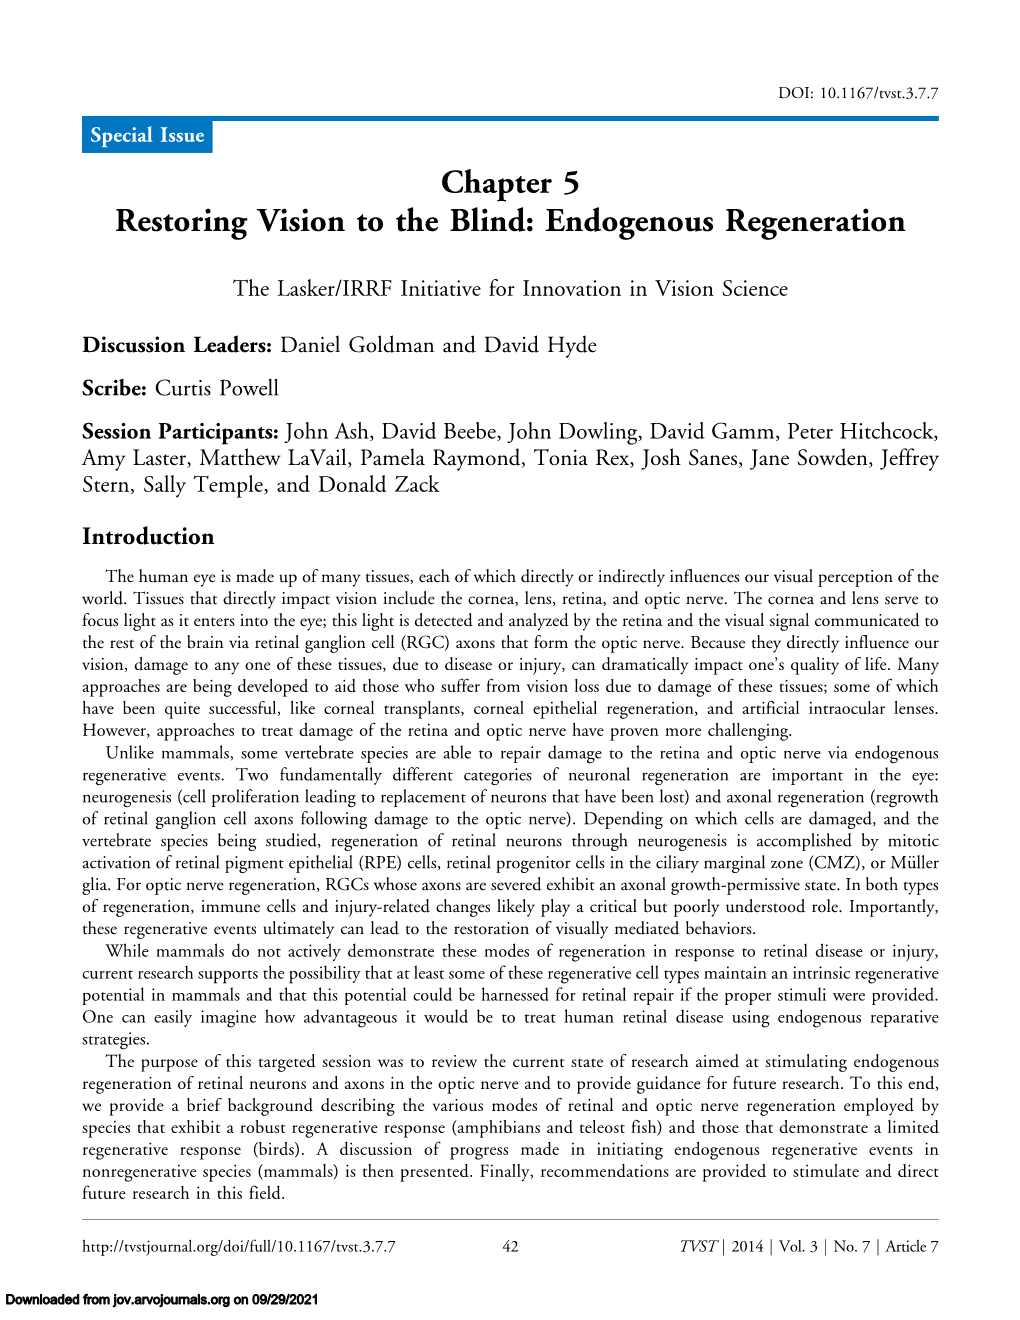 Chapter 5 Restoring Vision to the Blind: Endogenous Regeneration